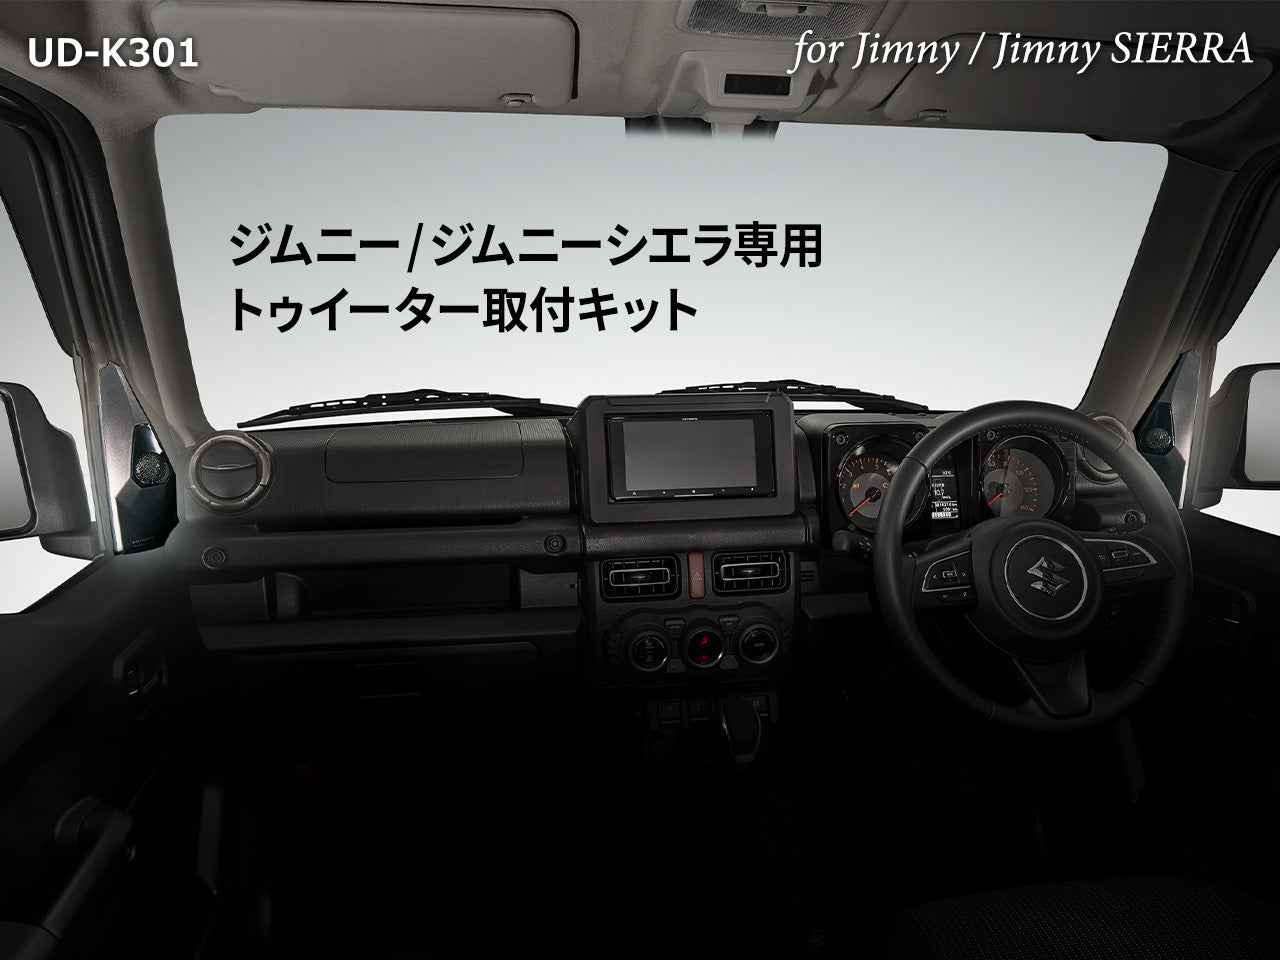 ジムニー/ジムニーシエラ専用 トゥイーター取付キット UD-K301